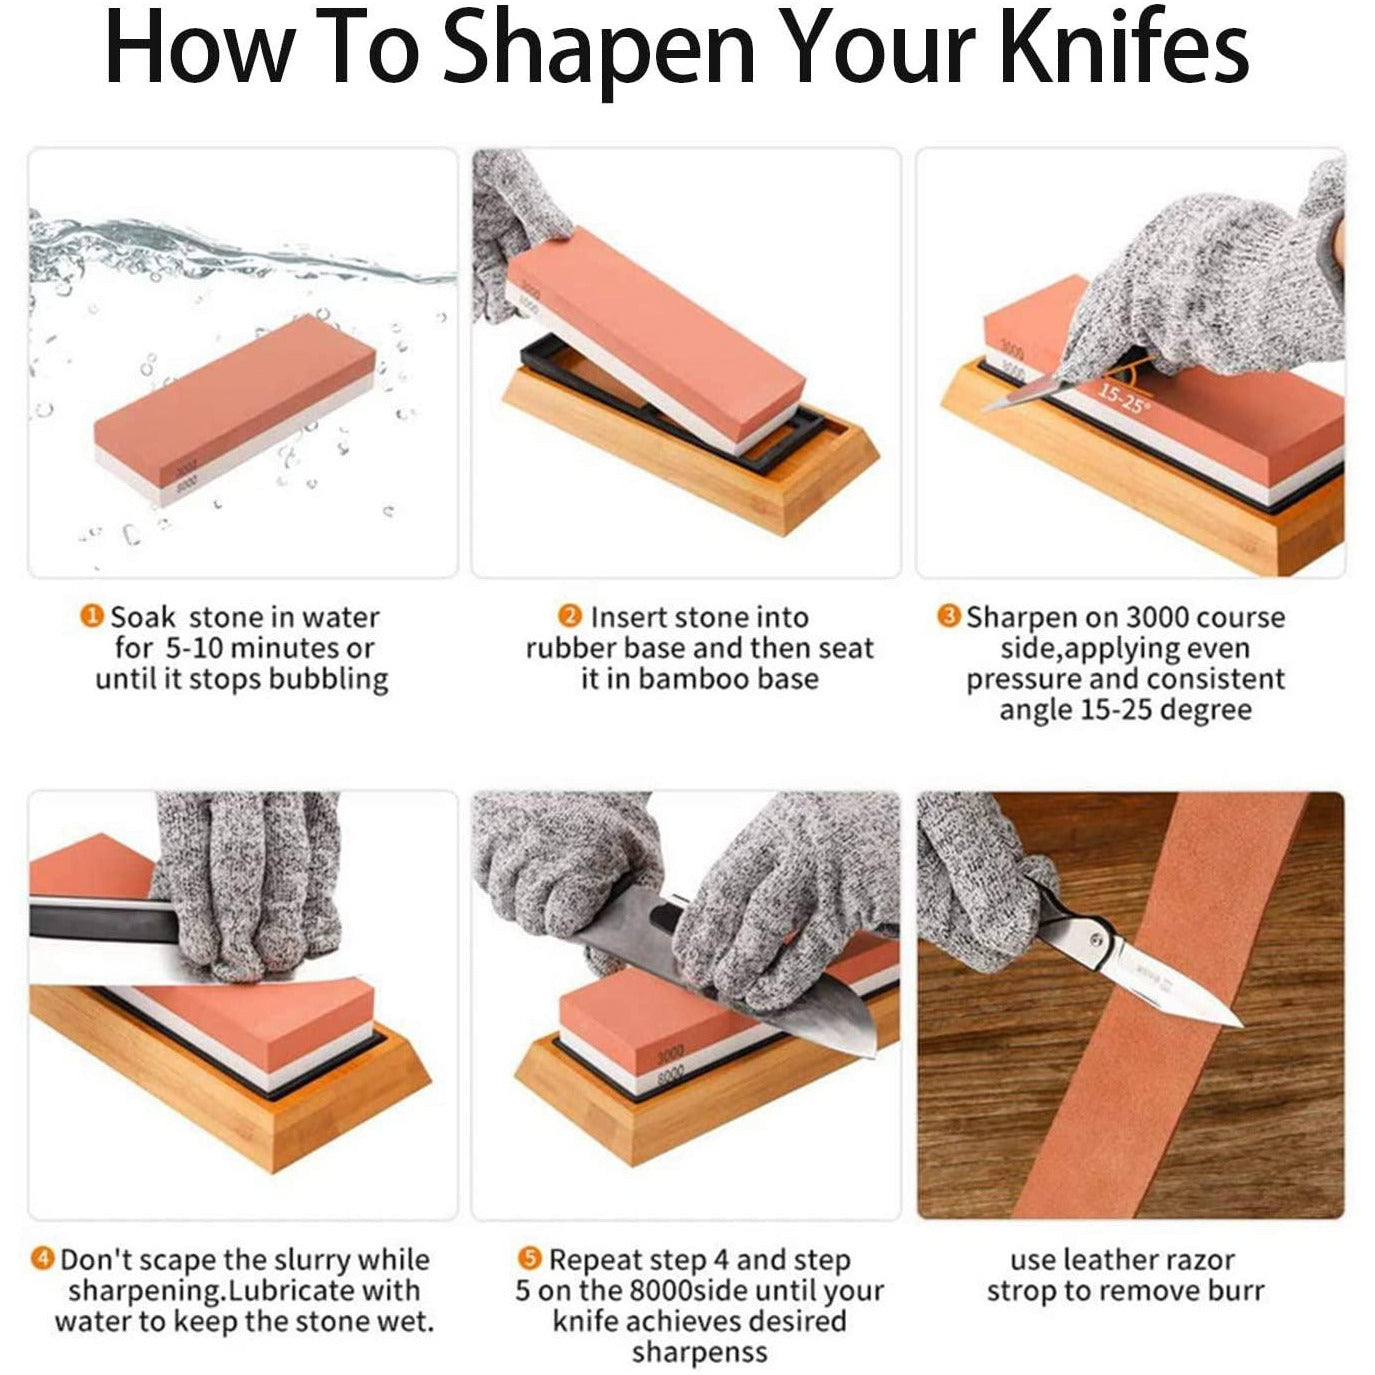 VEVOR Whetstone Knife Sharpening Kit, 2 Dual-Sided Grit Whetstones 400/1000  3000/8000, 10PCS Knife Sharpener Kit with 3 Non-Slip Bases, Angle & Honing